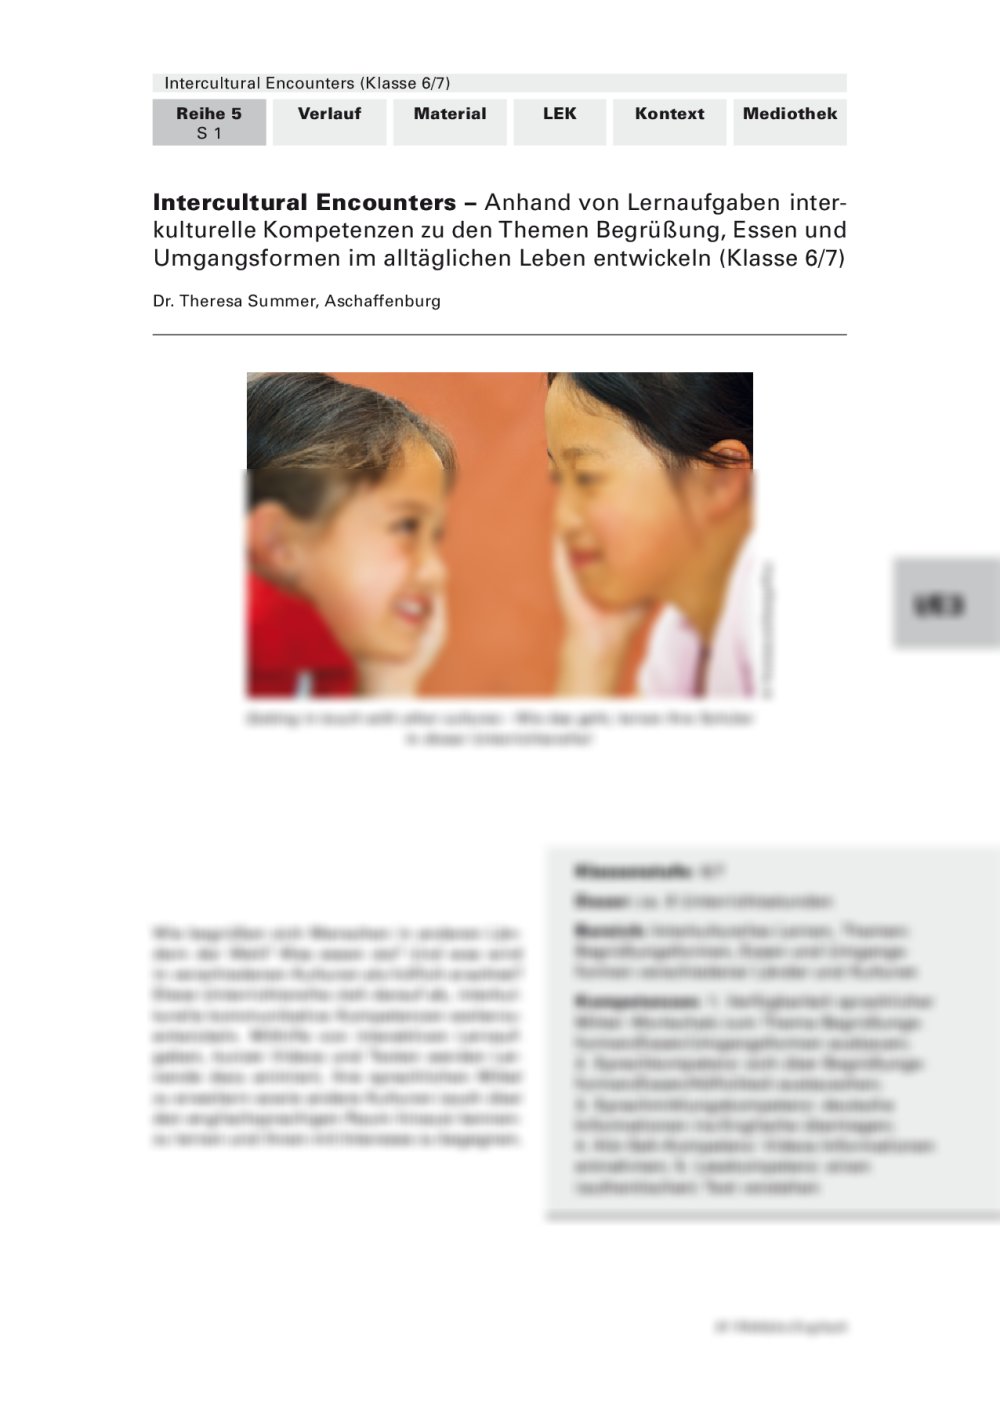 Anhand von Lernaufgaben interkulturelle Kompetenzen im alltäglichen Leben entwickeln - Seite 1